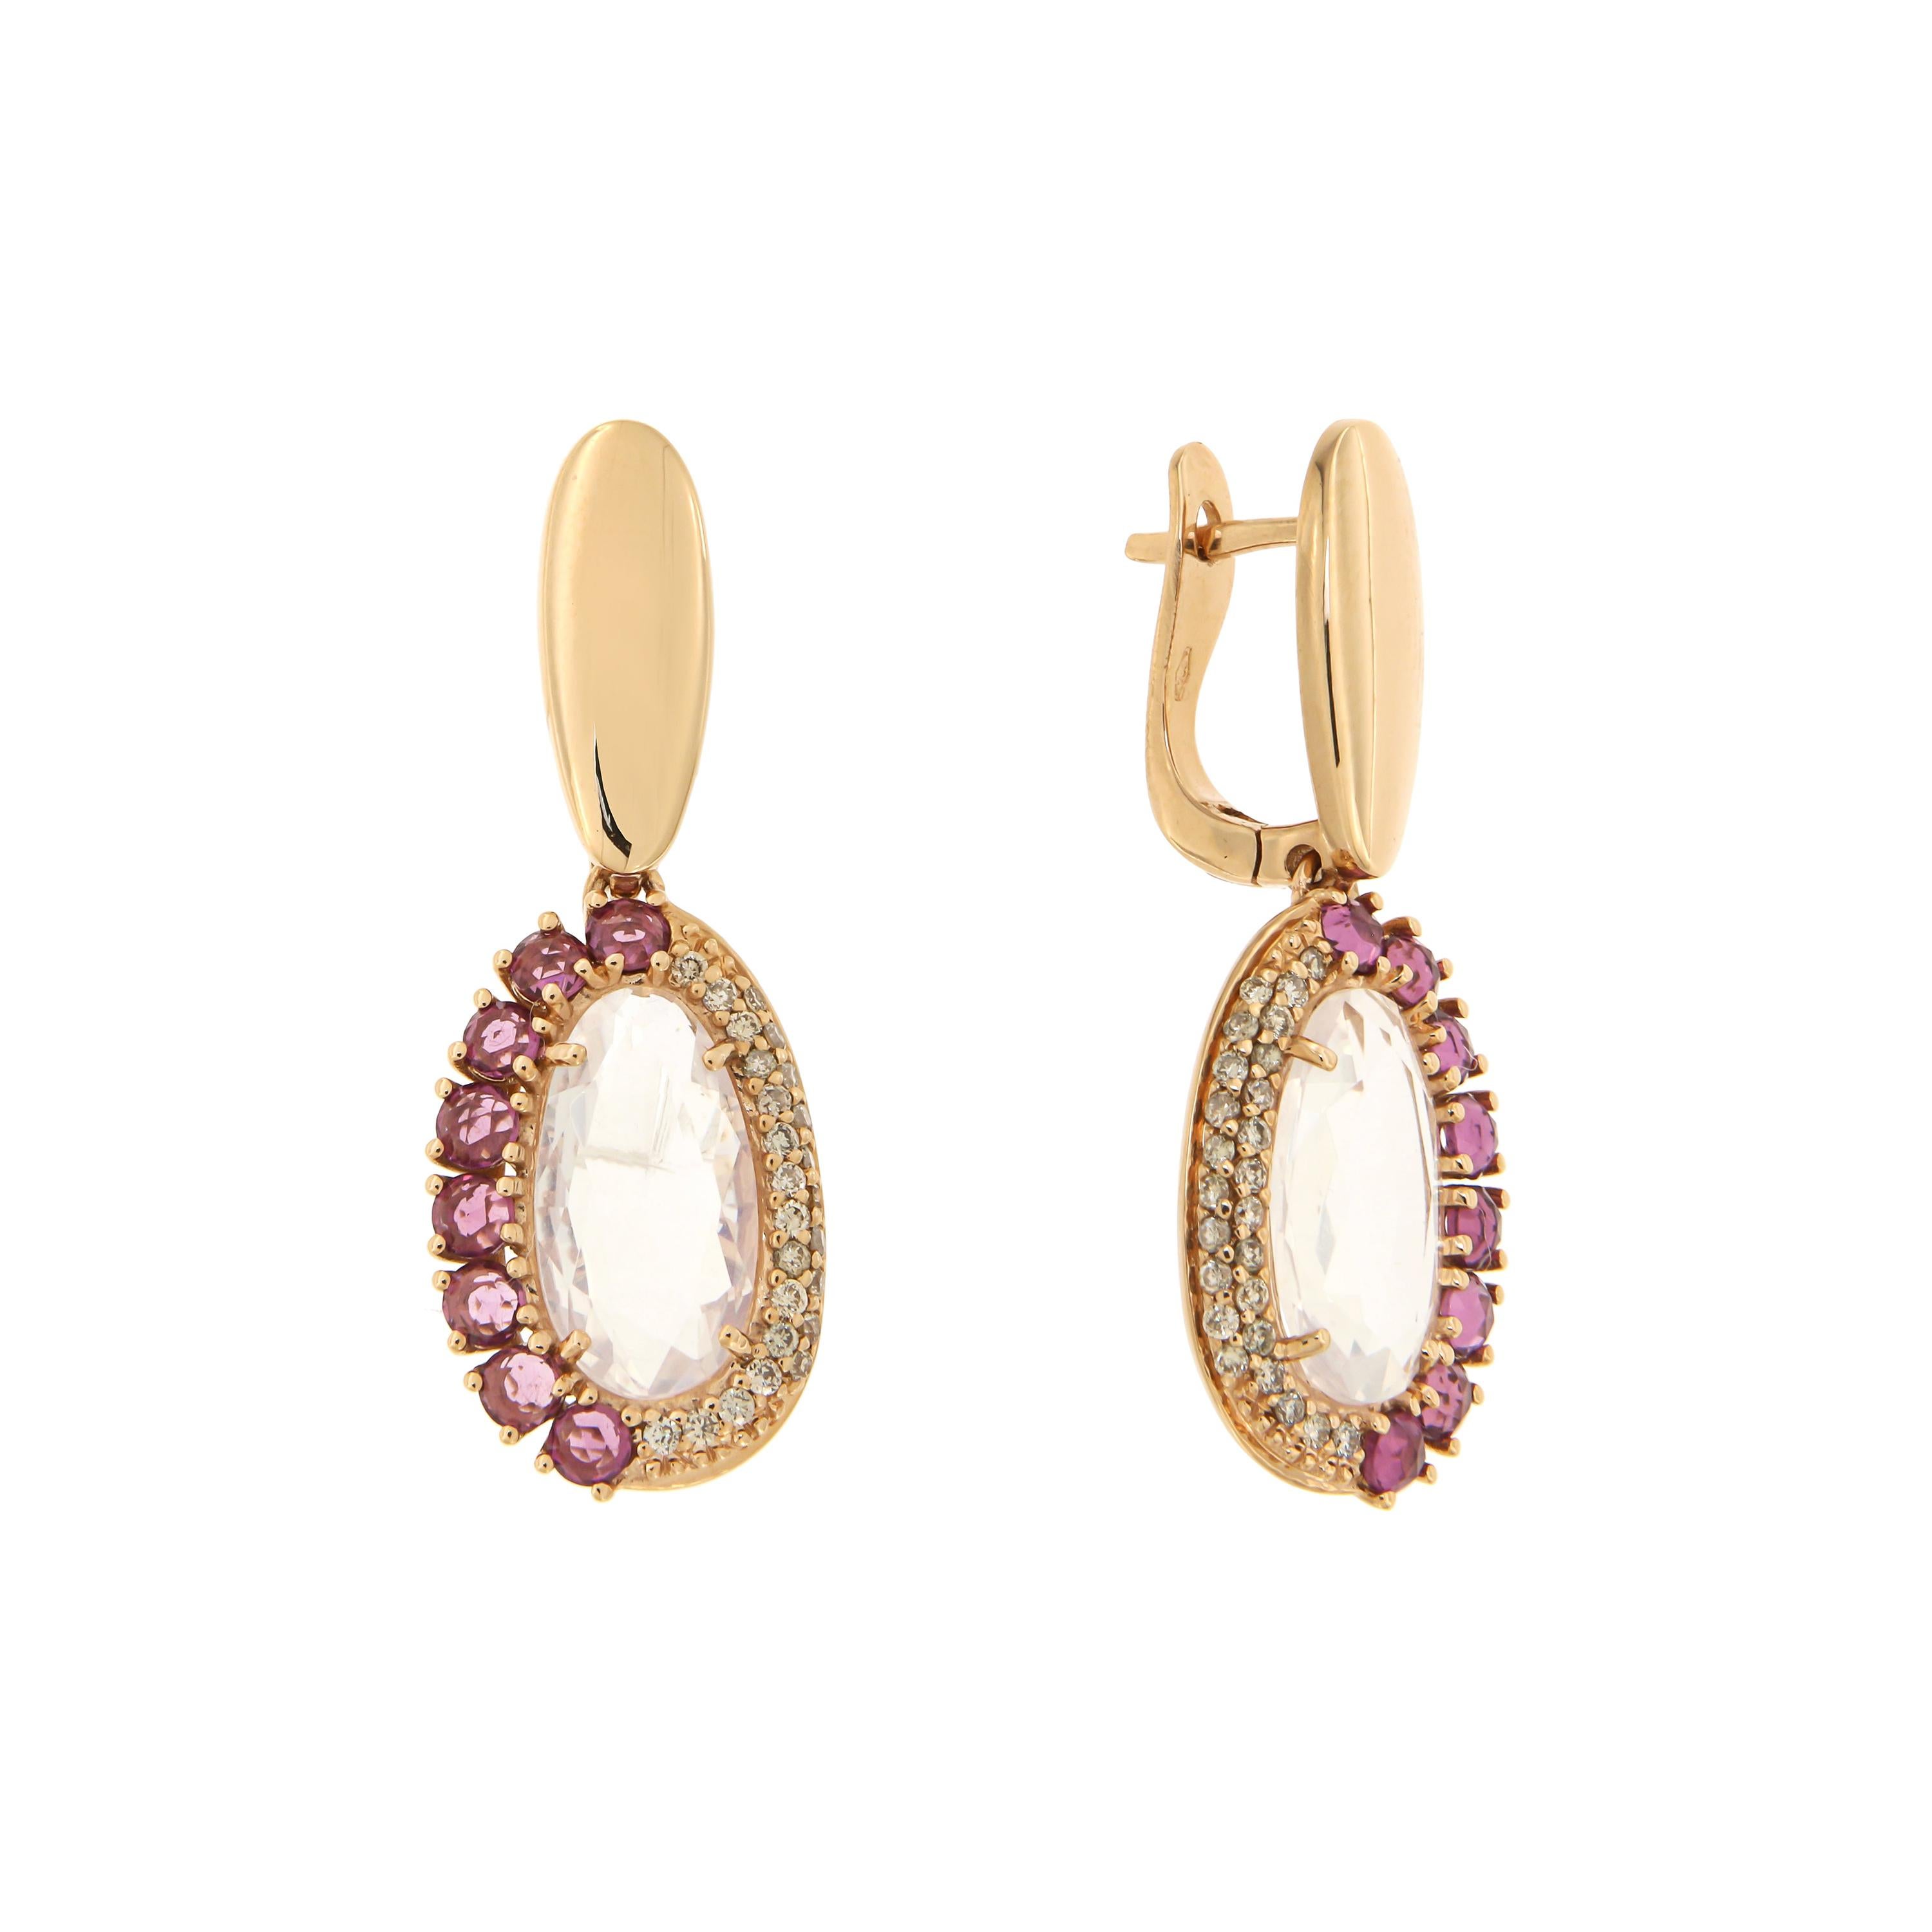 Elegant Quartz Rhodolite Brown Diamonds Rose Gold Earrings for Her Made in Italy For Sale